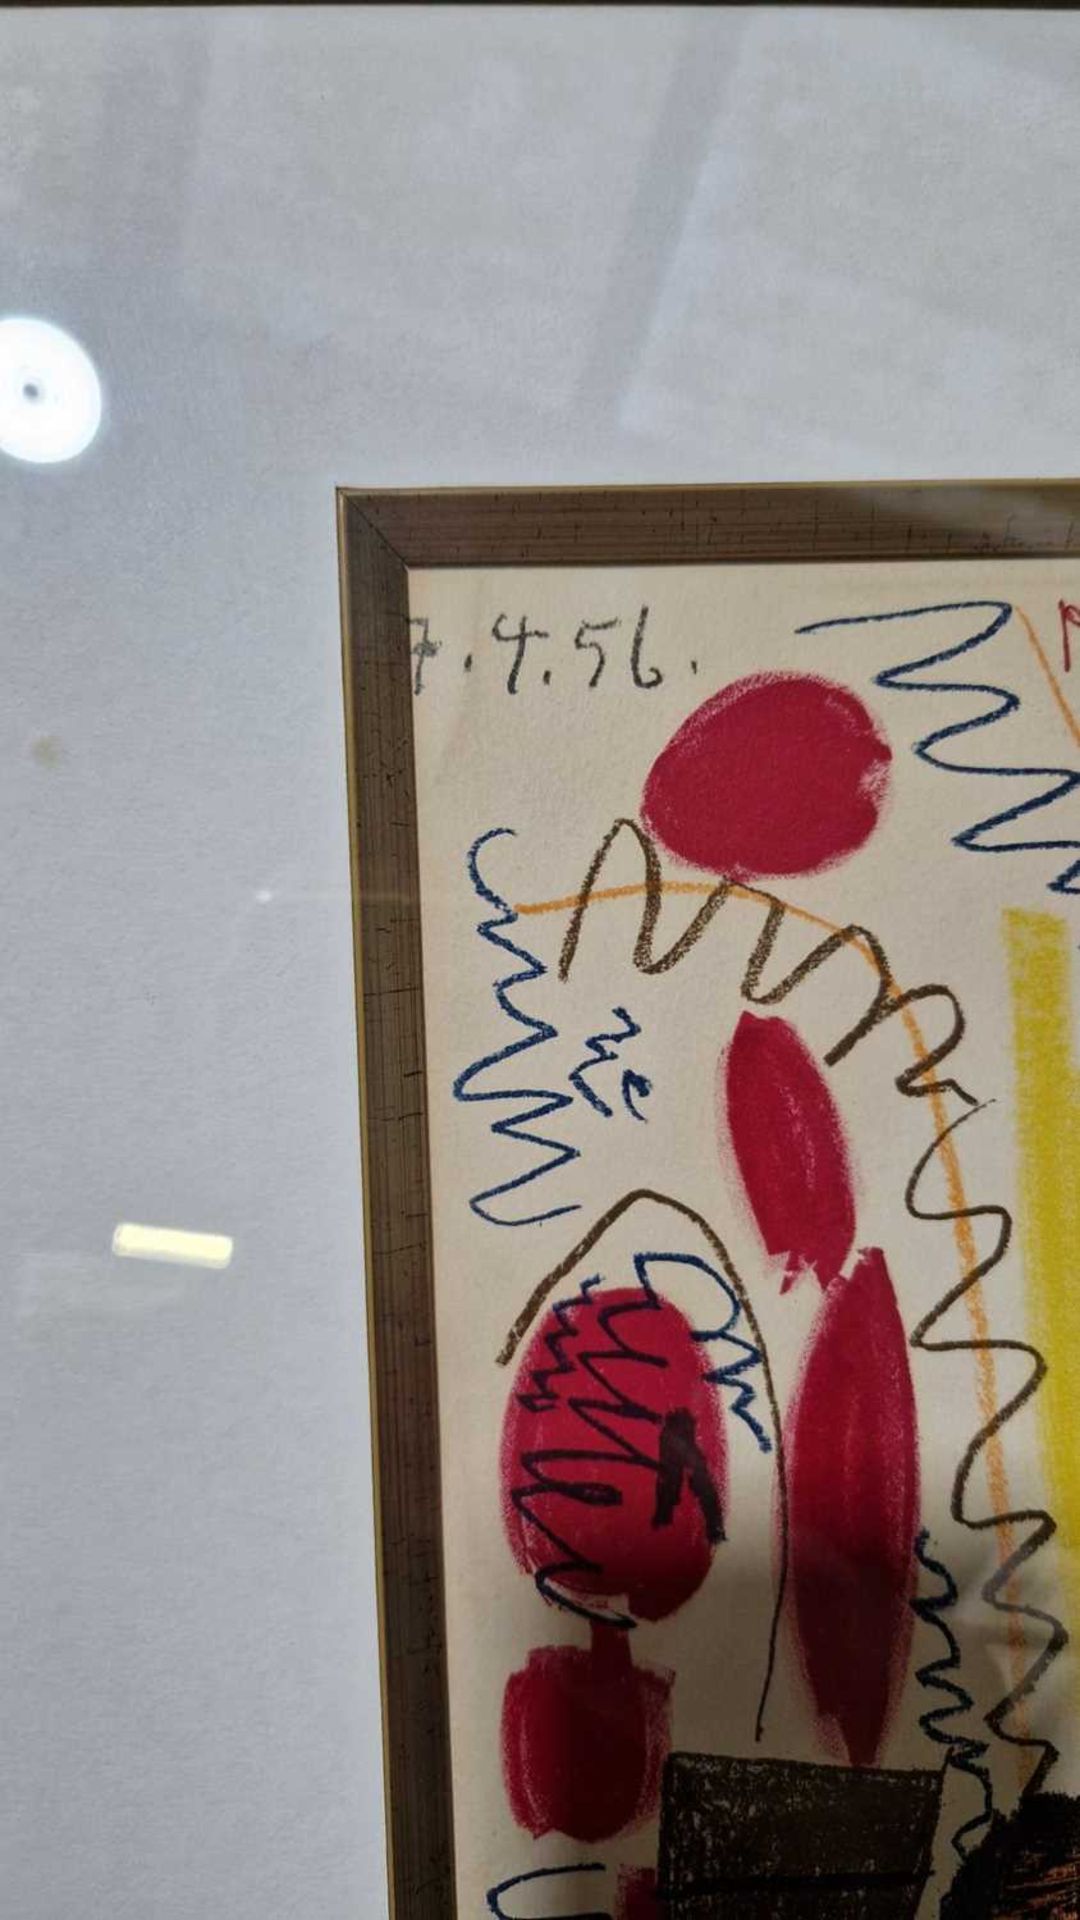 After Pablo Picasso (Spanish, 1881 - 1973), L'Atelier de Cannes (1958), colour lithograph, 43 x 30 c - Image 13 of 17